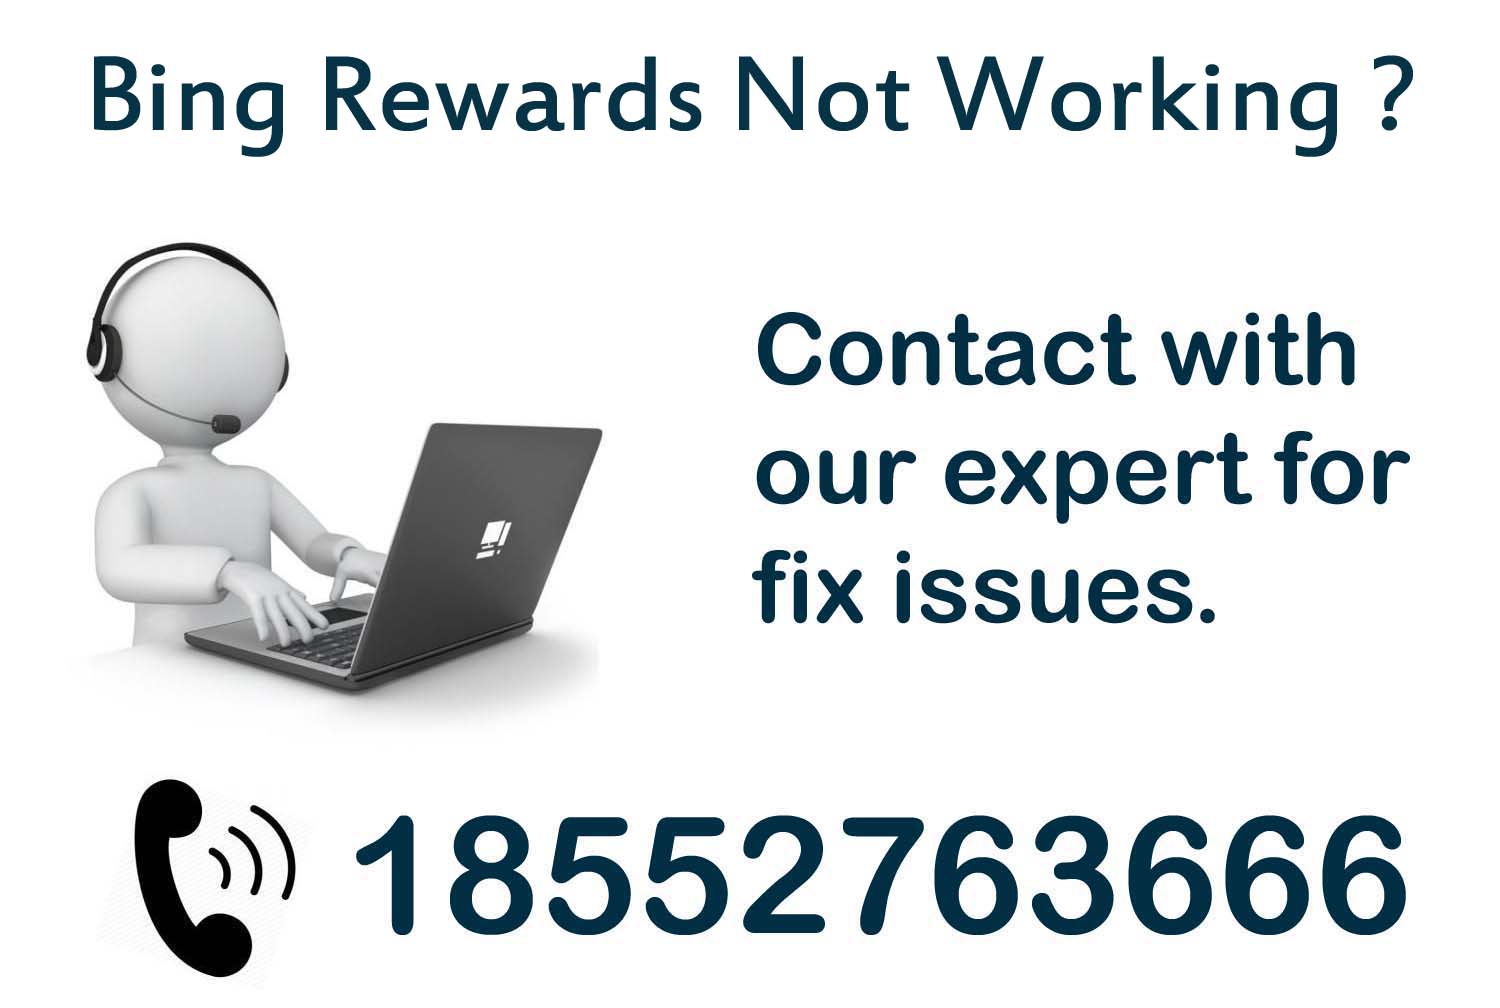 bing-rewards-not-working-dial-18552763666